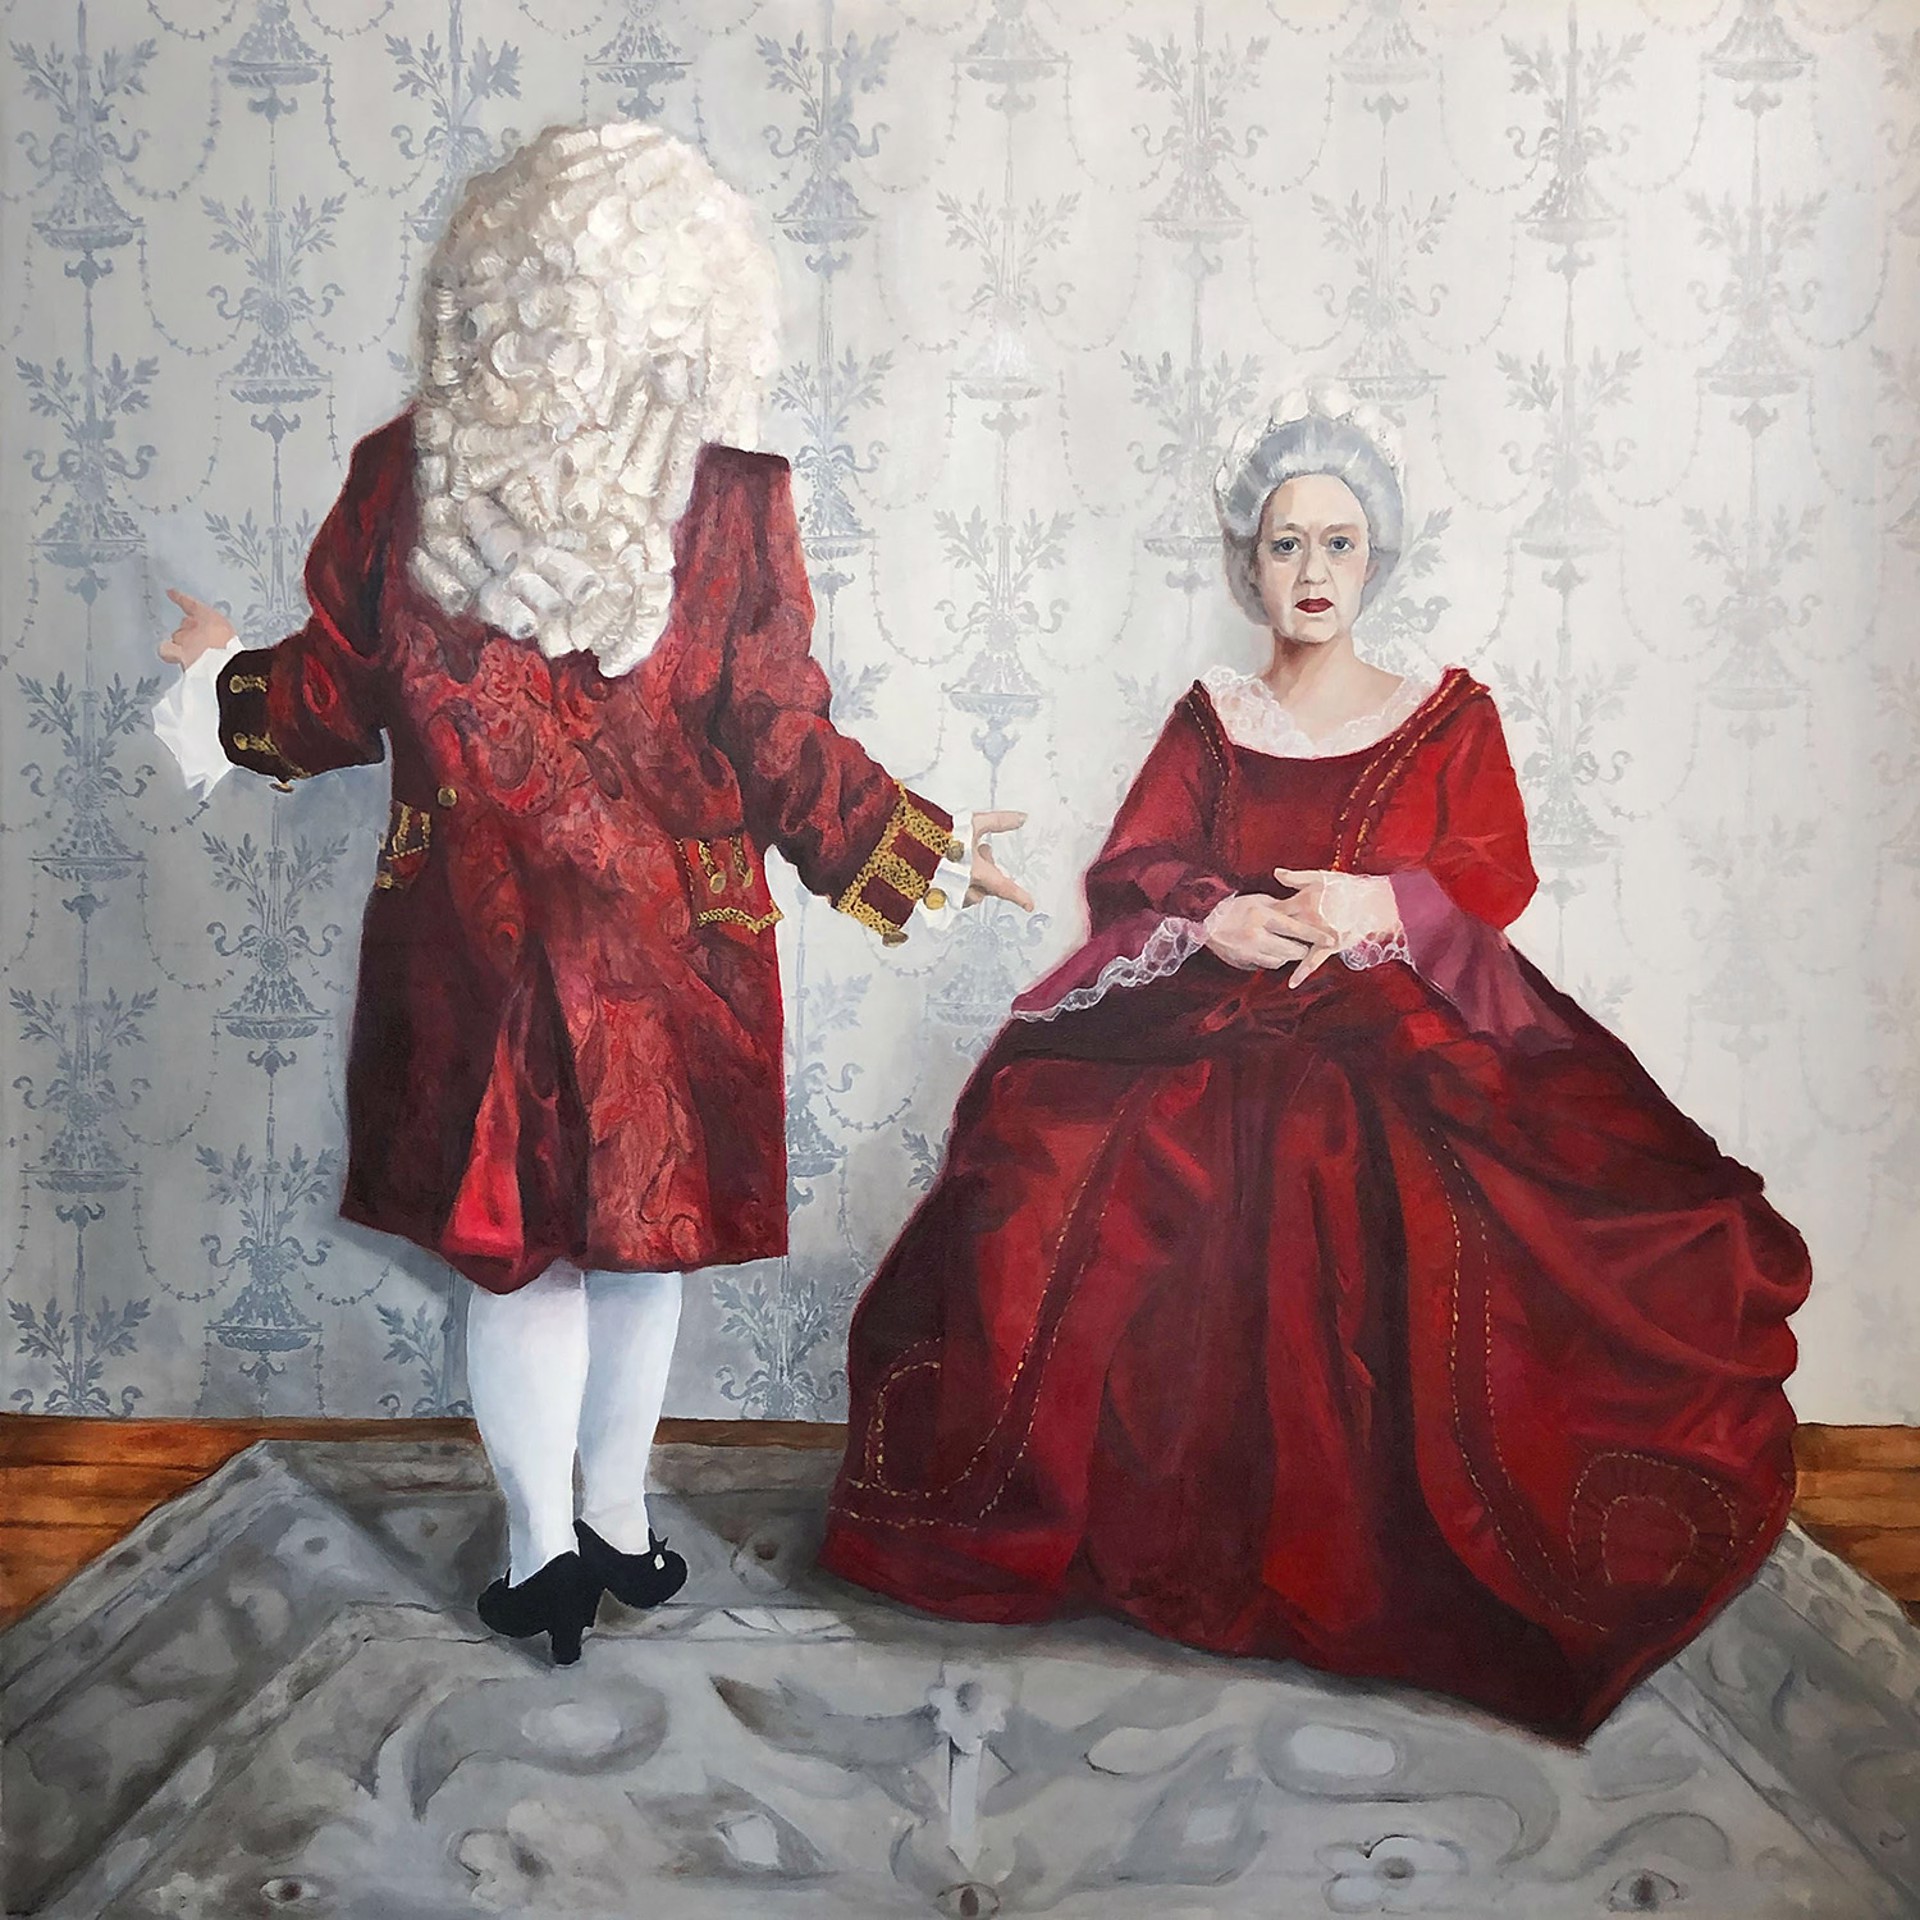 1720 (Matrimony Series) by Lauren Hamilton